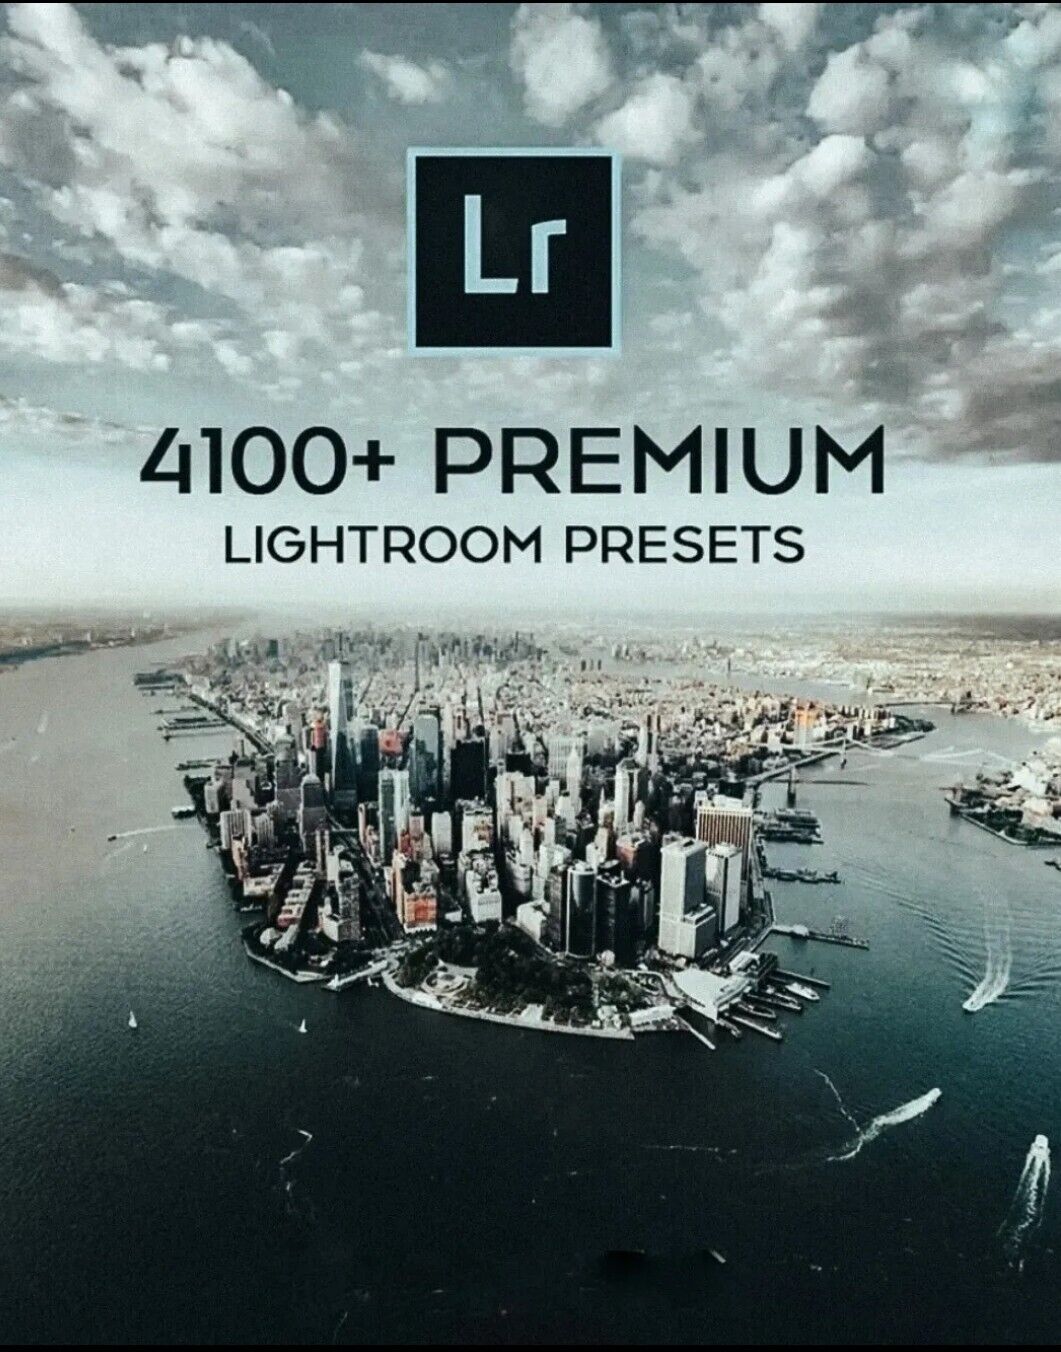 4100+ Desktop Premium Lightroom Presets